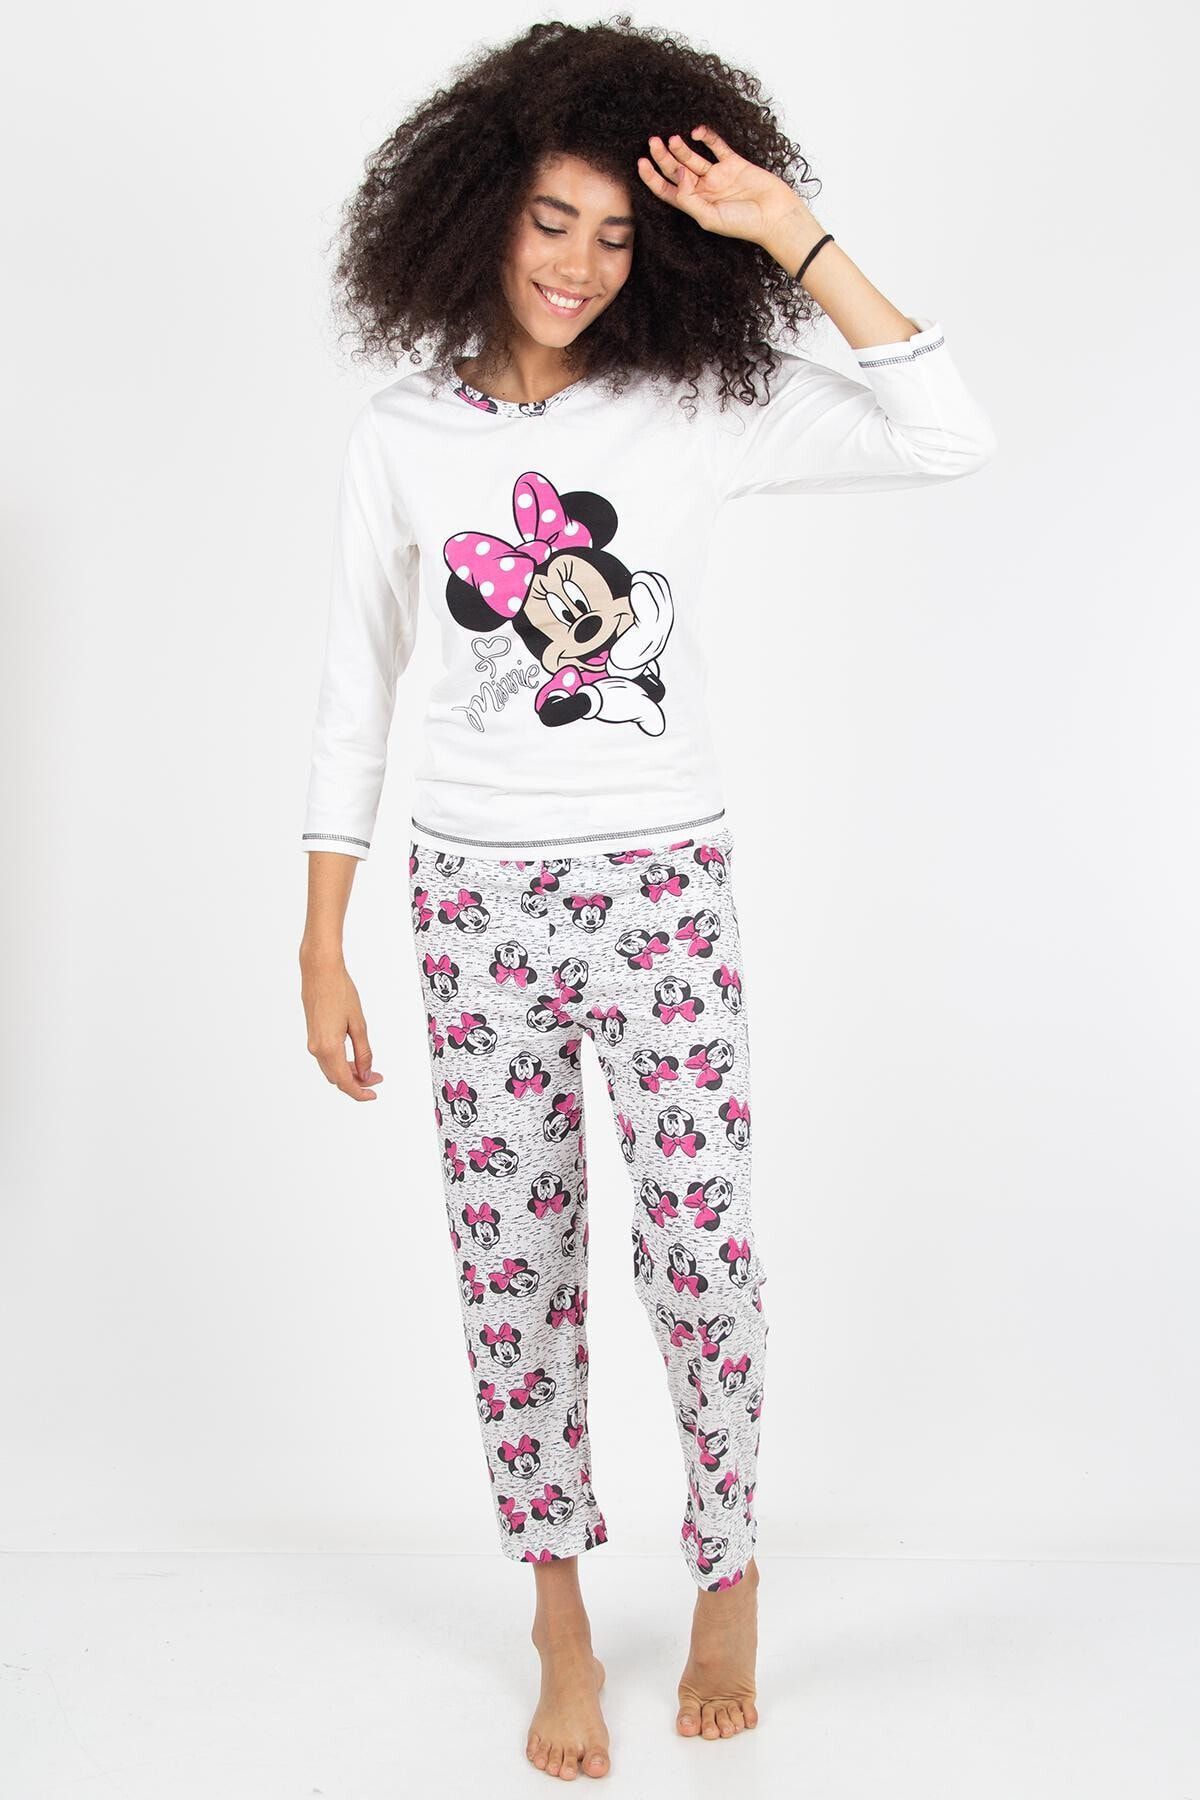 Morpile Kadın Beyaz Baskili Pijama Takimi A1202